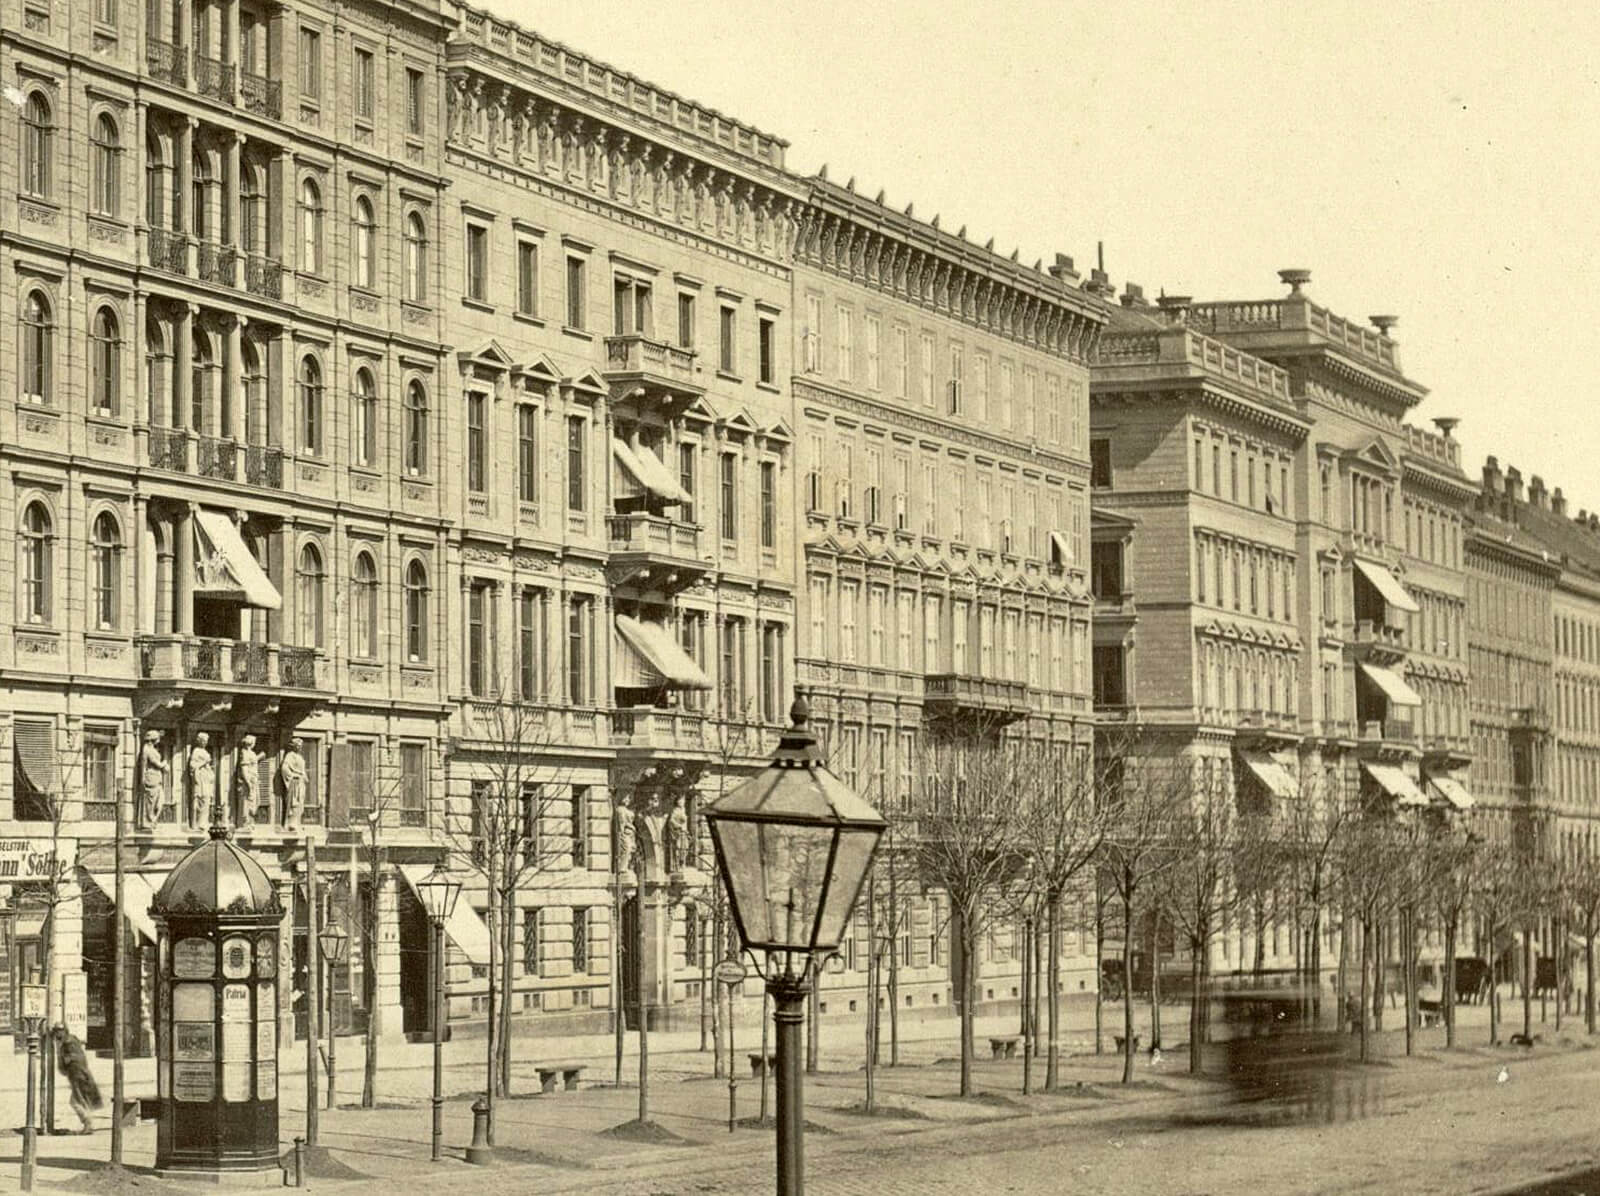 Mietshäuser an der Nordseite des Kärntner Rings, Fotografie von Carl Haack, um 1865 (Detail), Wien Museum 